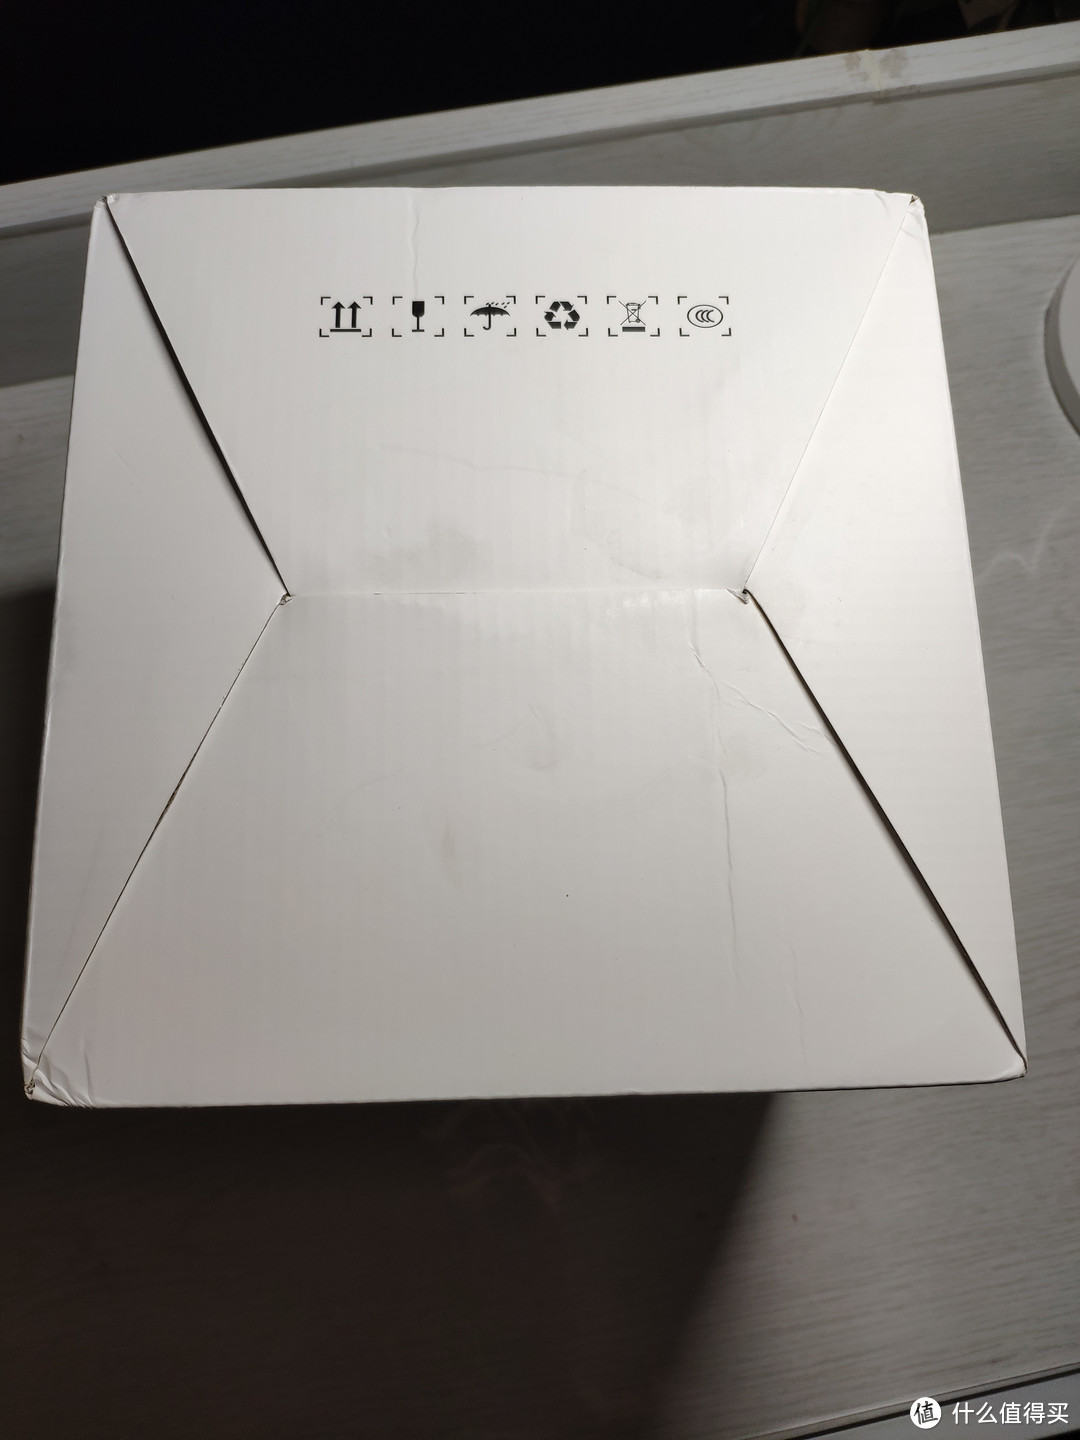 【众测狂欢】“考拉工厂店 小巧智能桌面暖风机 ”是真小啊！！！